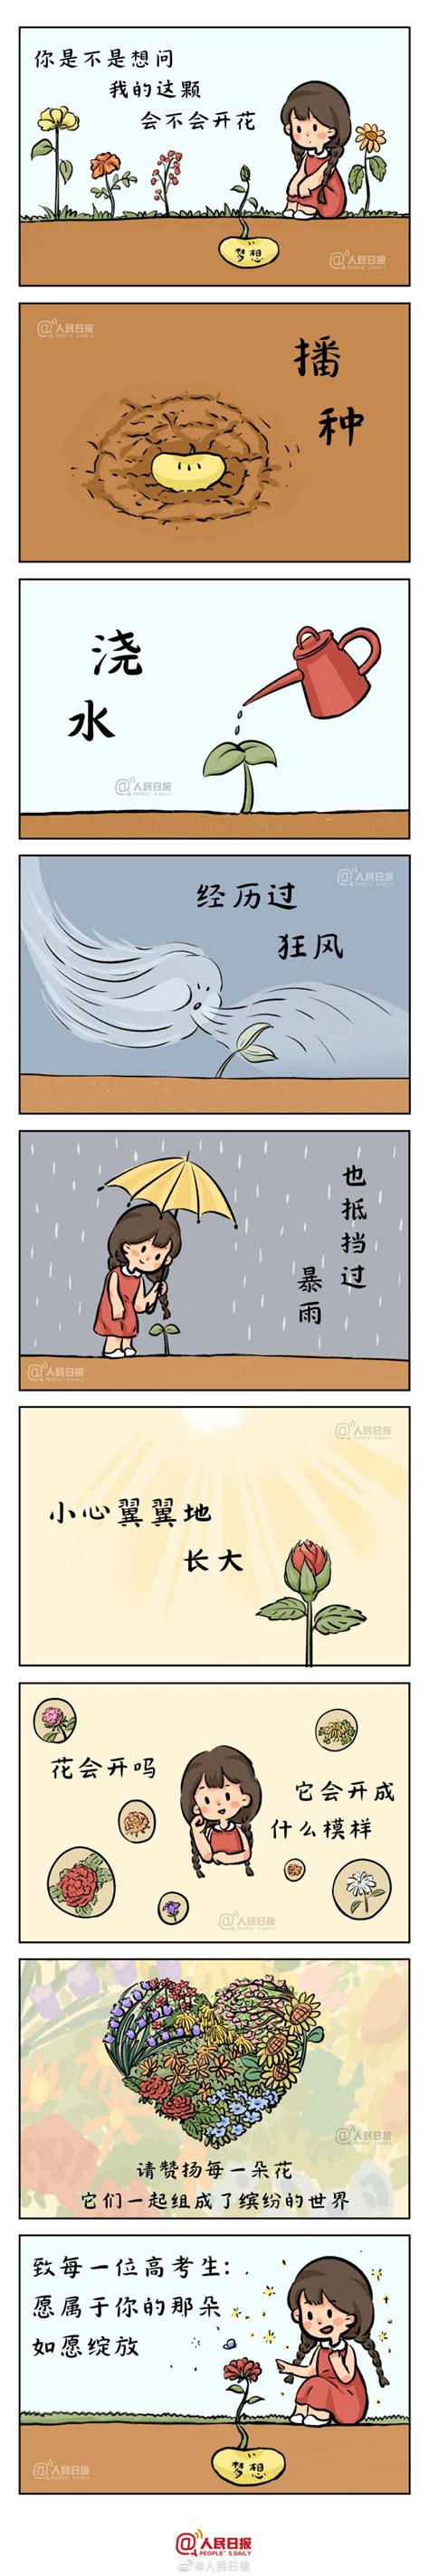 给1291万高考生的手绘：愿属于你的那朵花如愿绽放_北京日报网